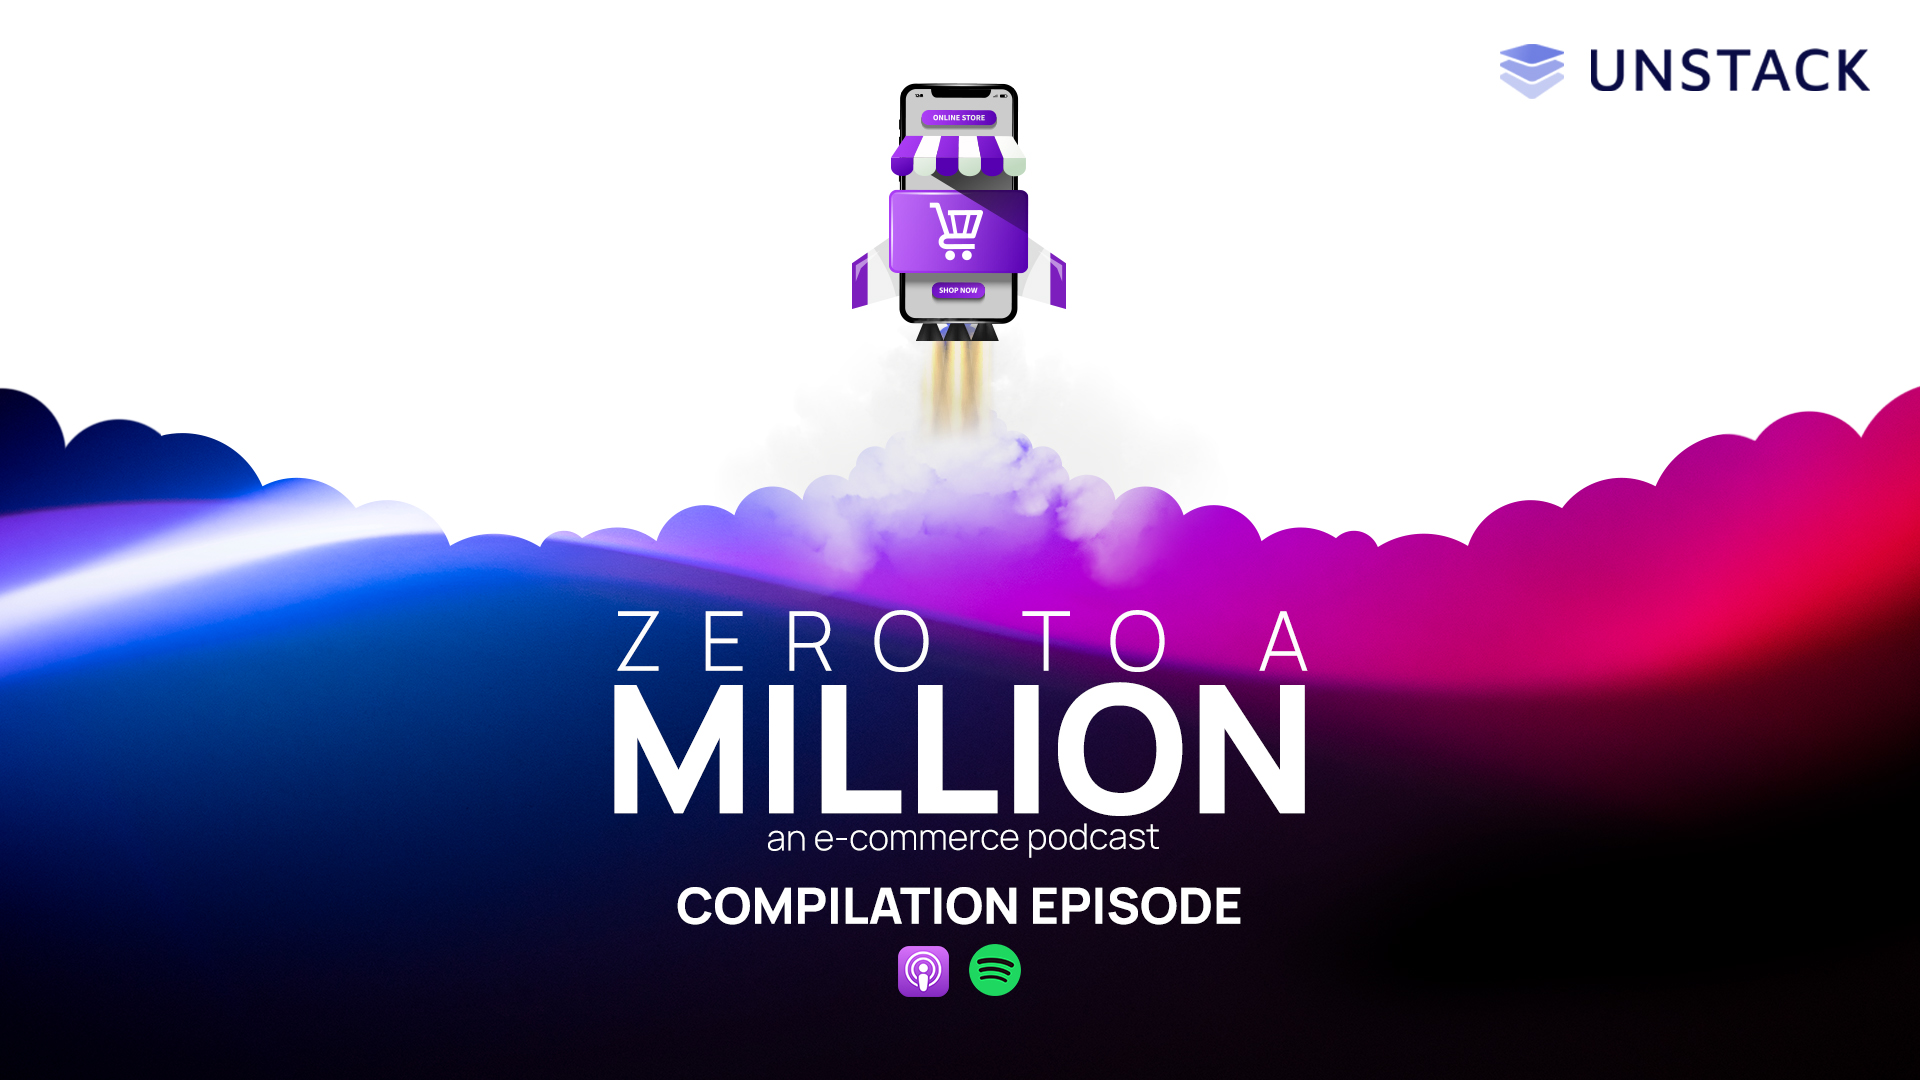 Zero to a Million Compilation Episode